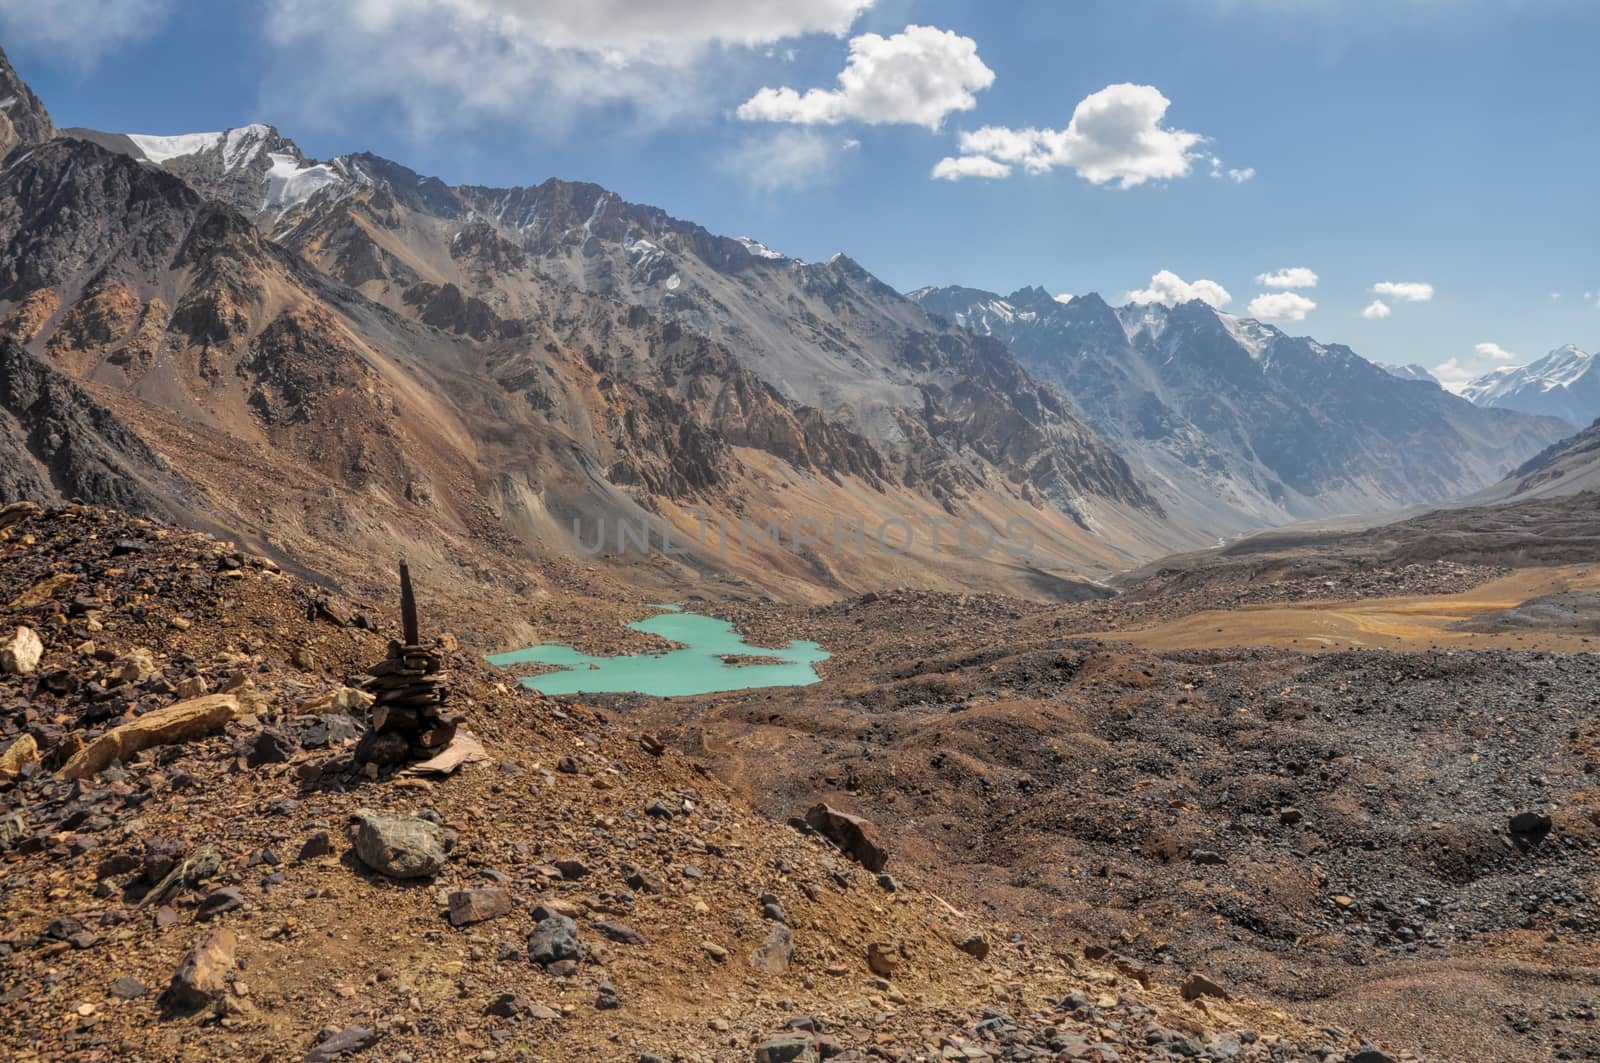 Arid valley in Tajikistan by MichalKnitl